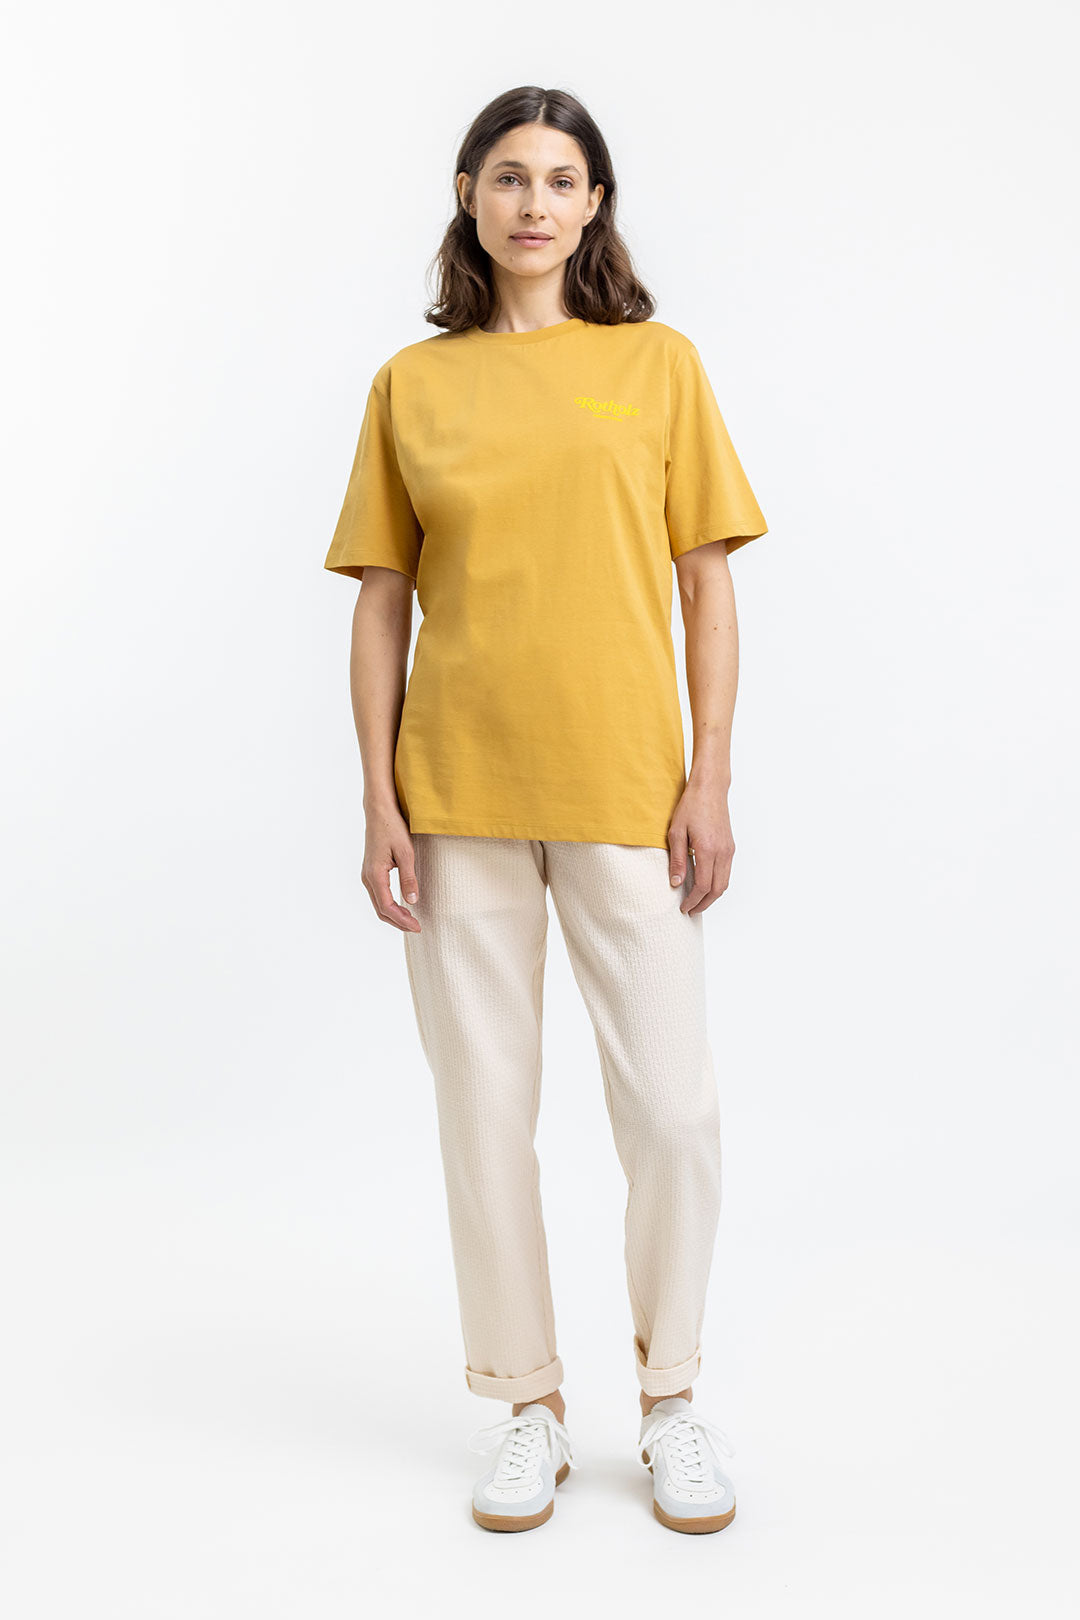 T-shirt jaune Retro Logo en coton 100% biologique de Rotholz